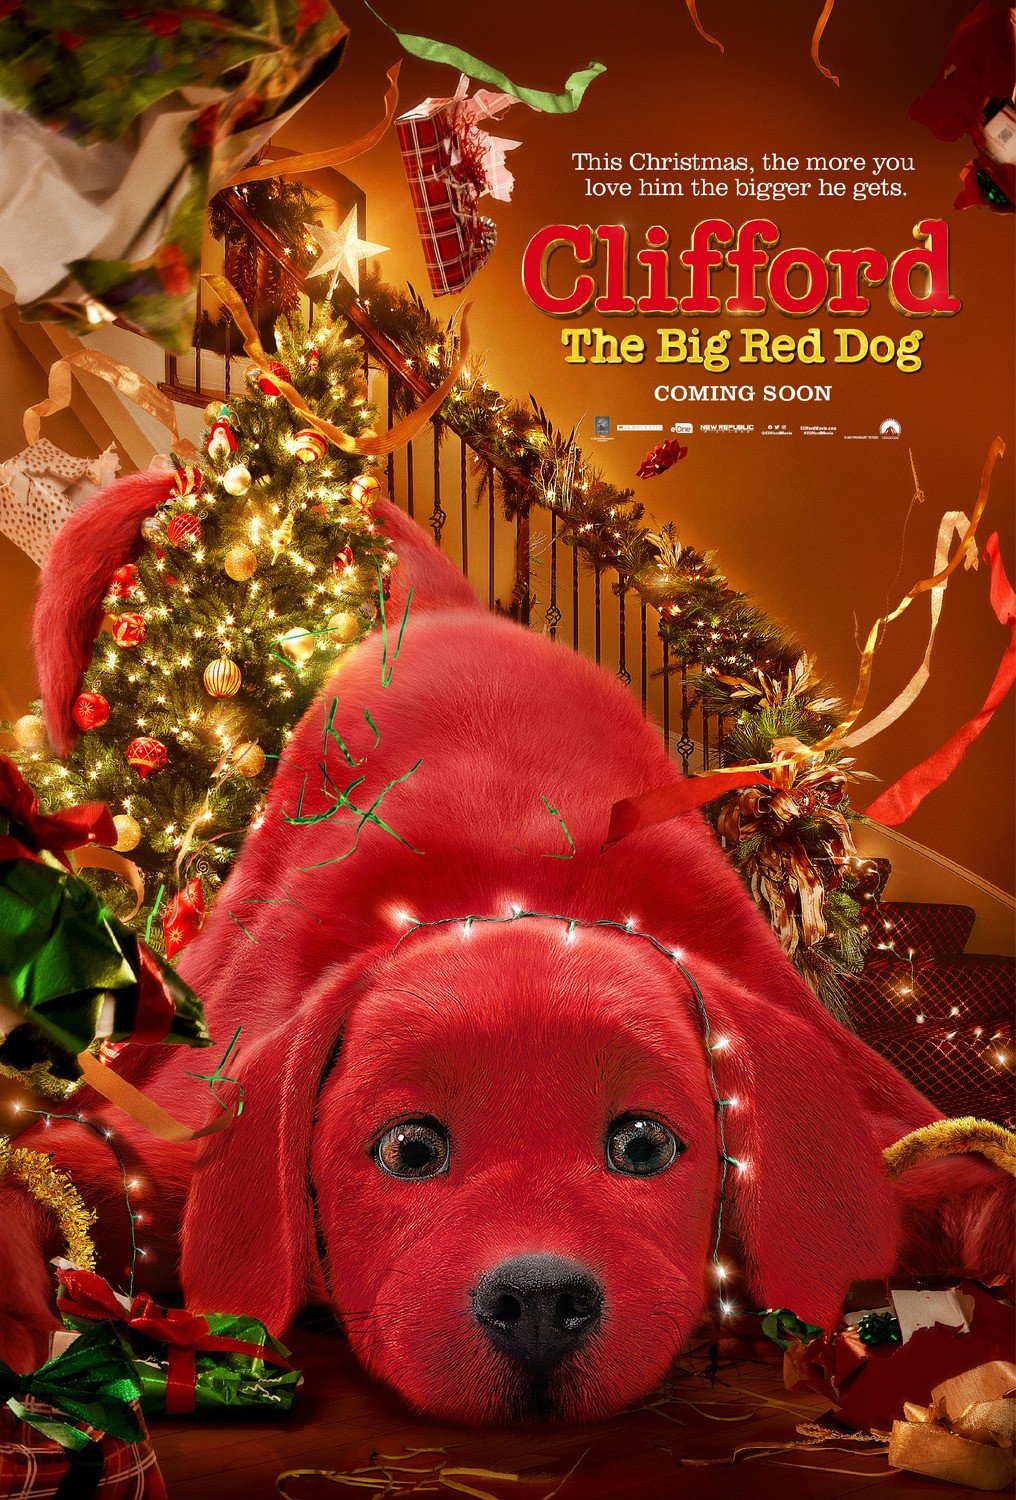 ดูหนังออนไลน์ Clifford the Big Red Dog (2021) คลิฟฟอร์ด หมายักษ์สีแดง